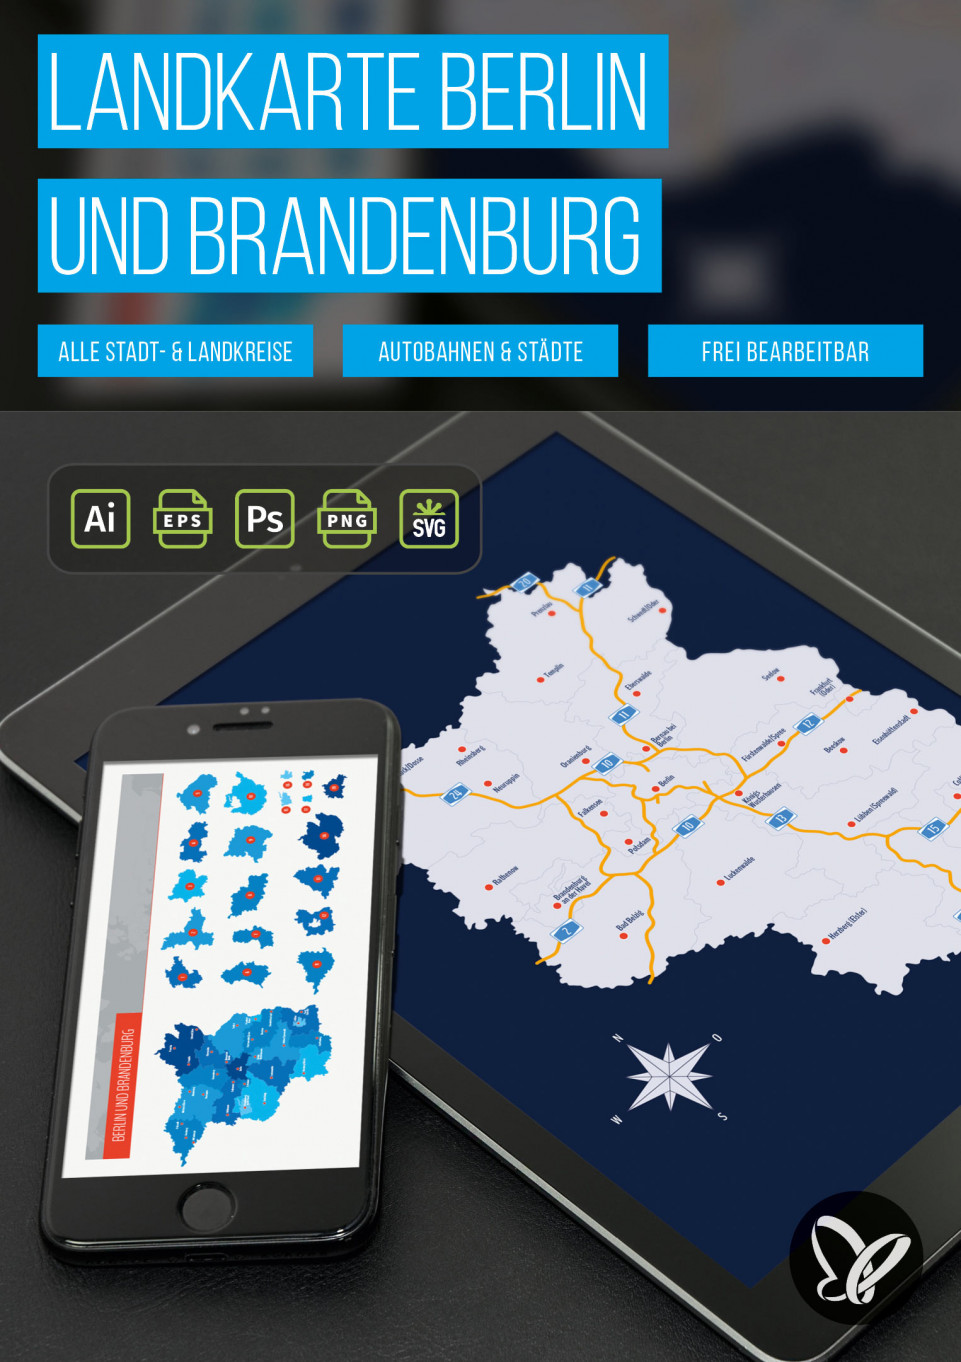 Landkarte Brandenburg mit Landkreisen und Berlin